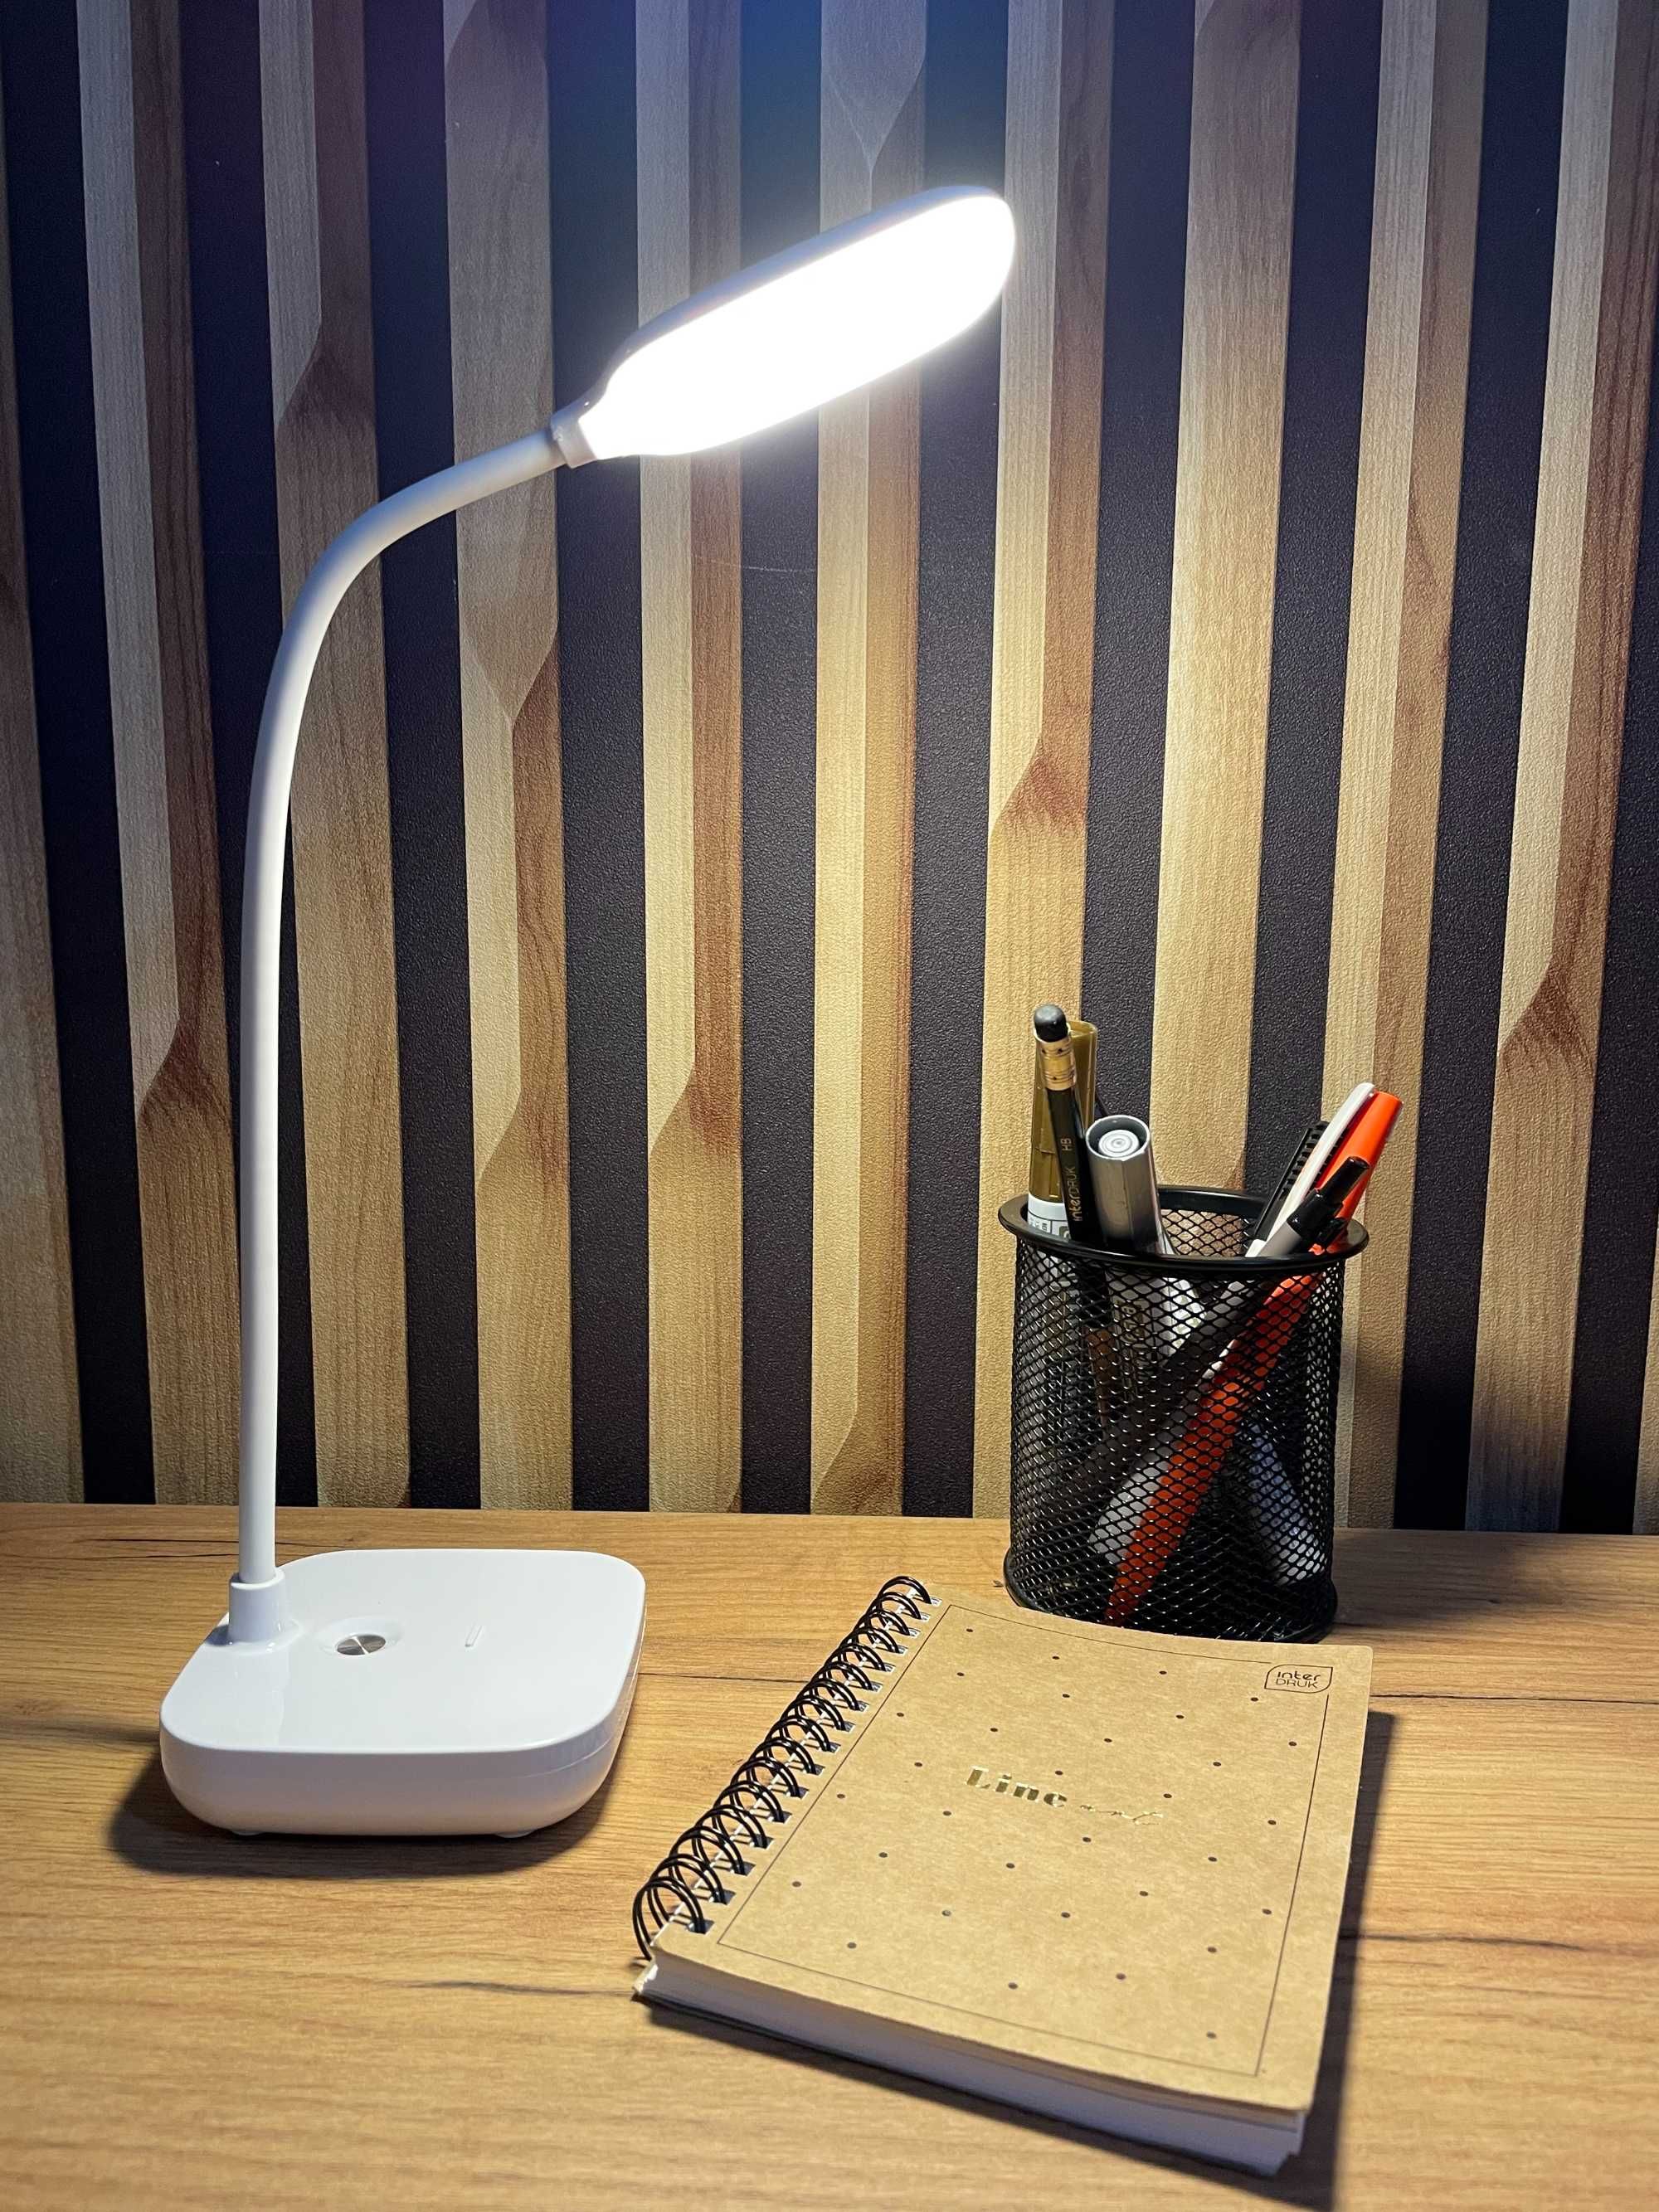 Lampka na biurko led nocna szkolna biurkowa lampa